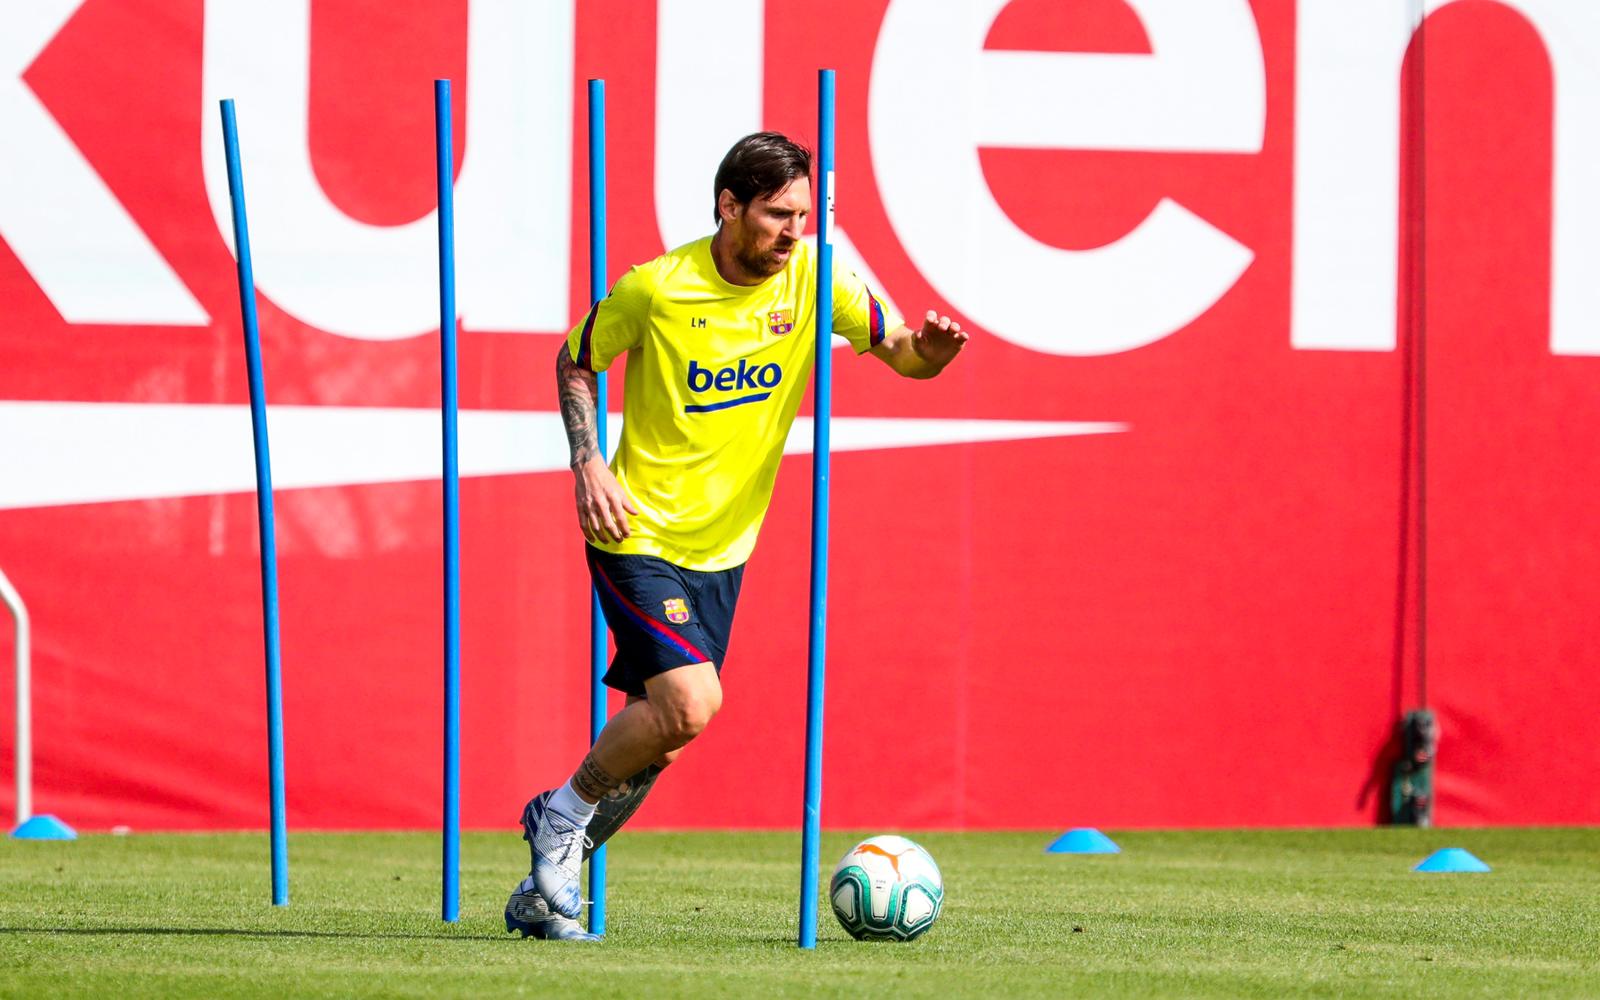 Misterio por la ausencia de Messi en el entrenamiento general del Barcelona a días del regreso de La Liga